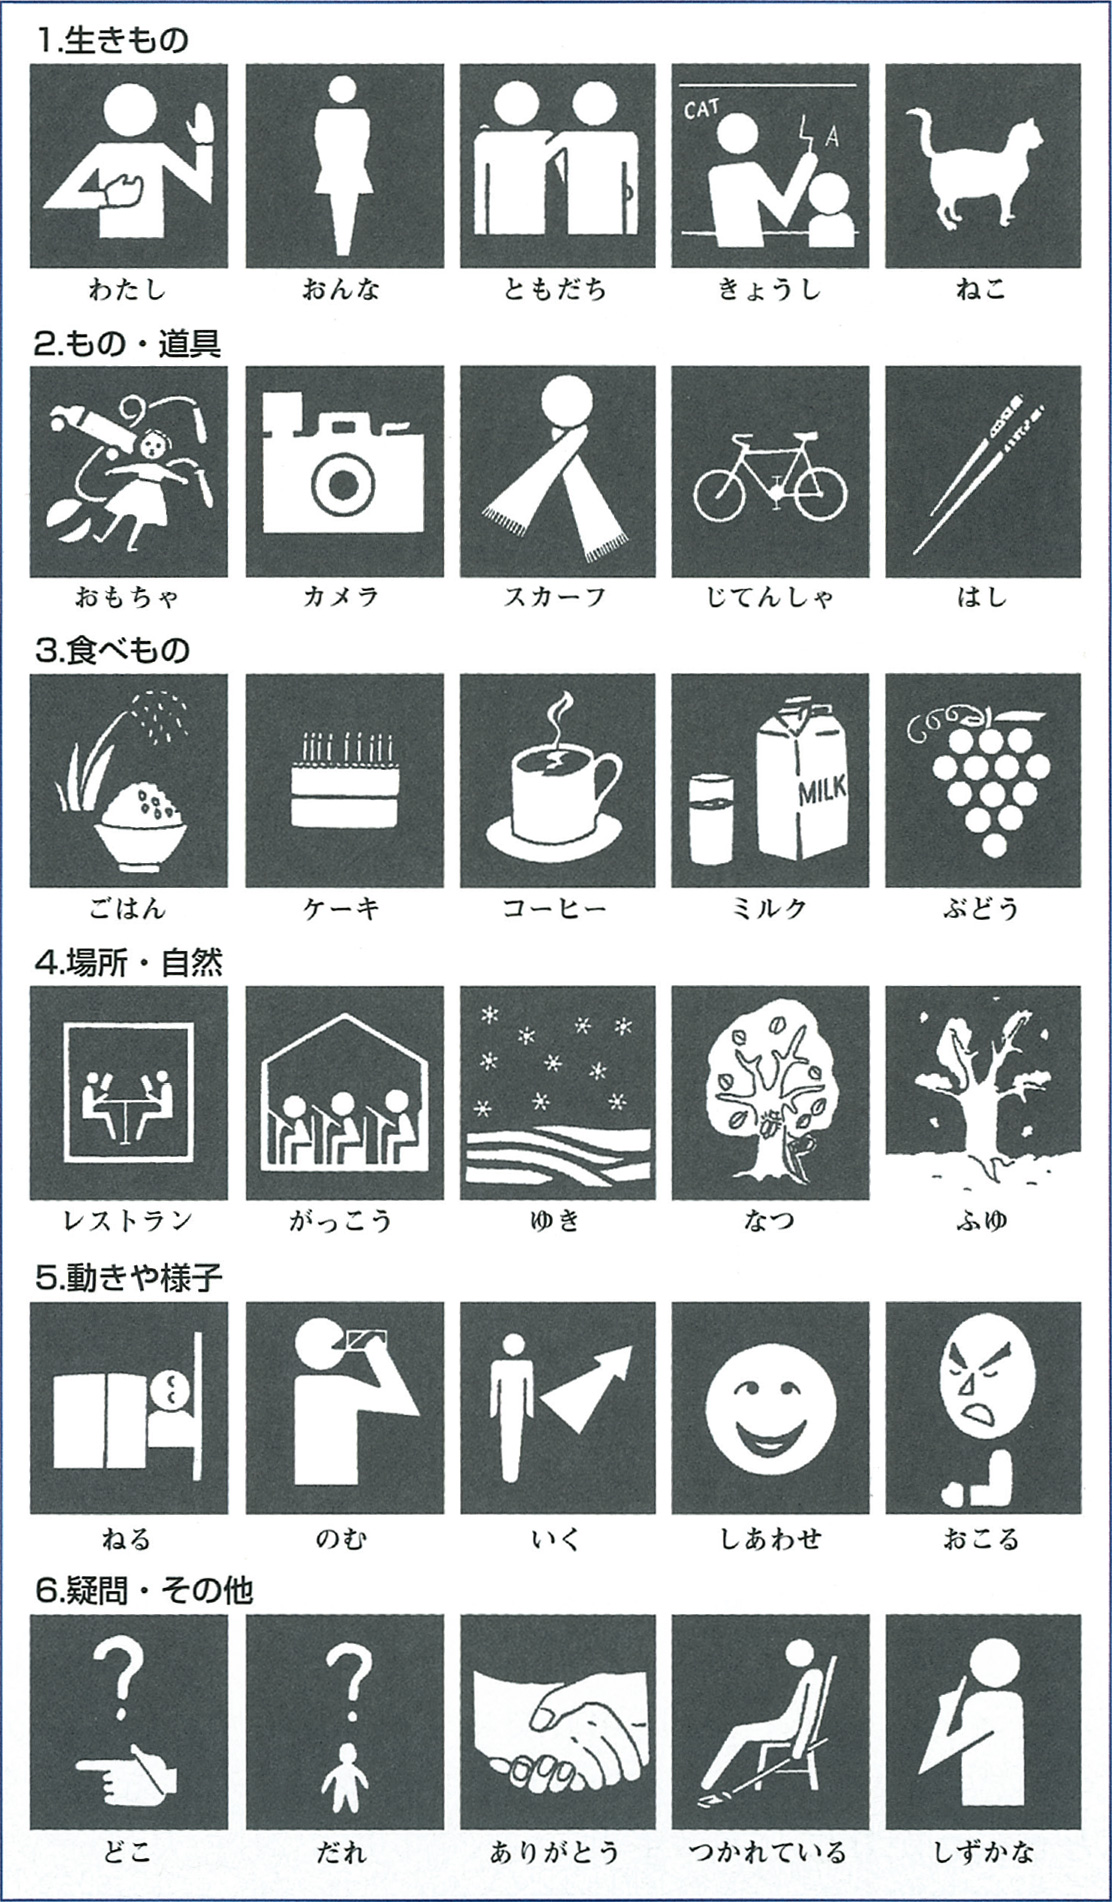 [図] 日本版PICの視覚シンボル（藤澤他、2001より